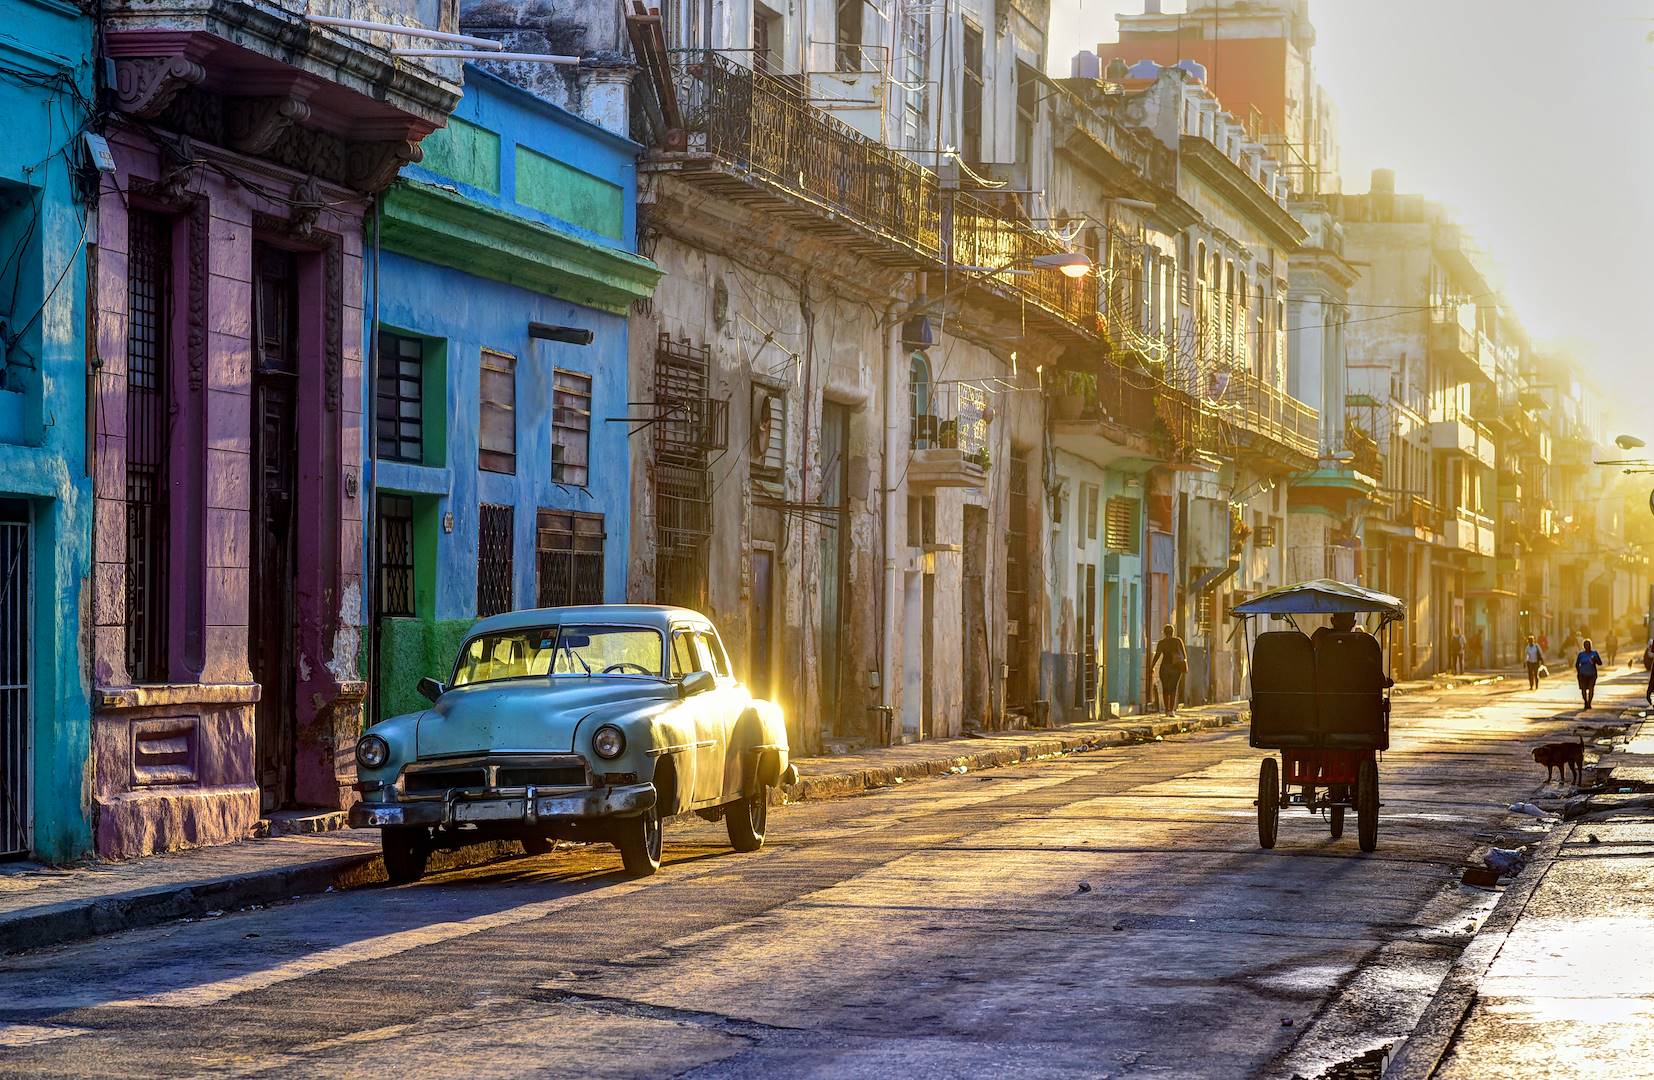 Roadtrip Cuba historique - 21 jours